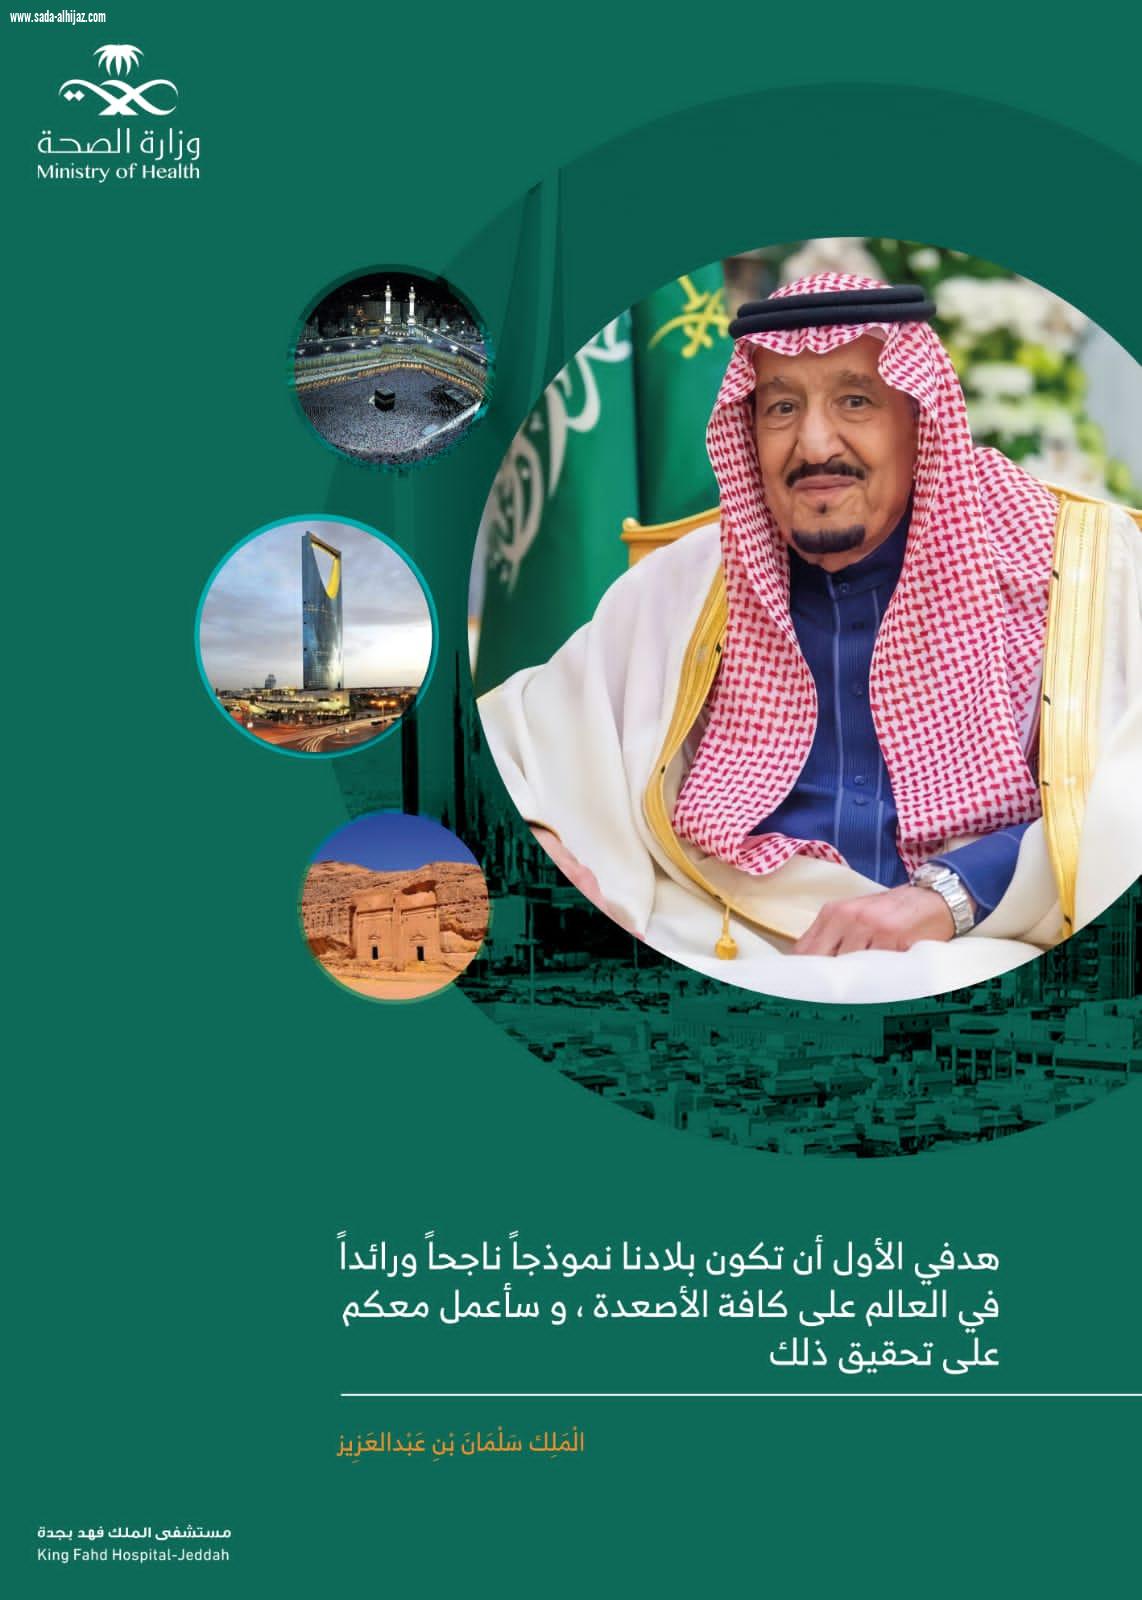 مستشفى الملك فهد بجدة ينهي استعداداته للاحتفال باليوم الوطني السعودي 91 